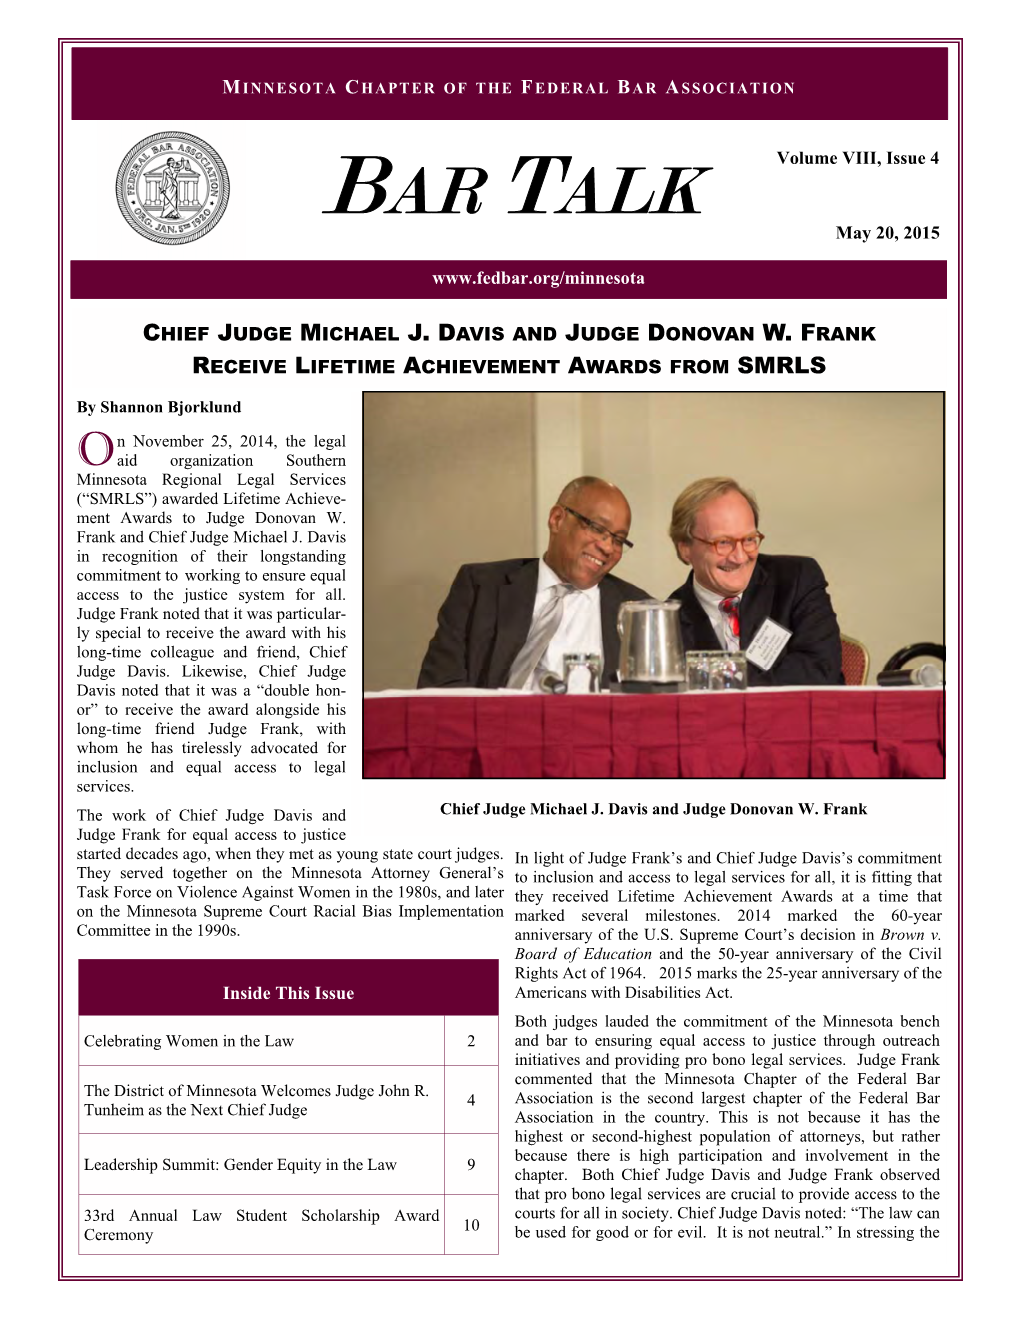 Bar Talk Issue 4